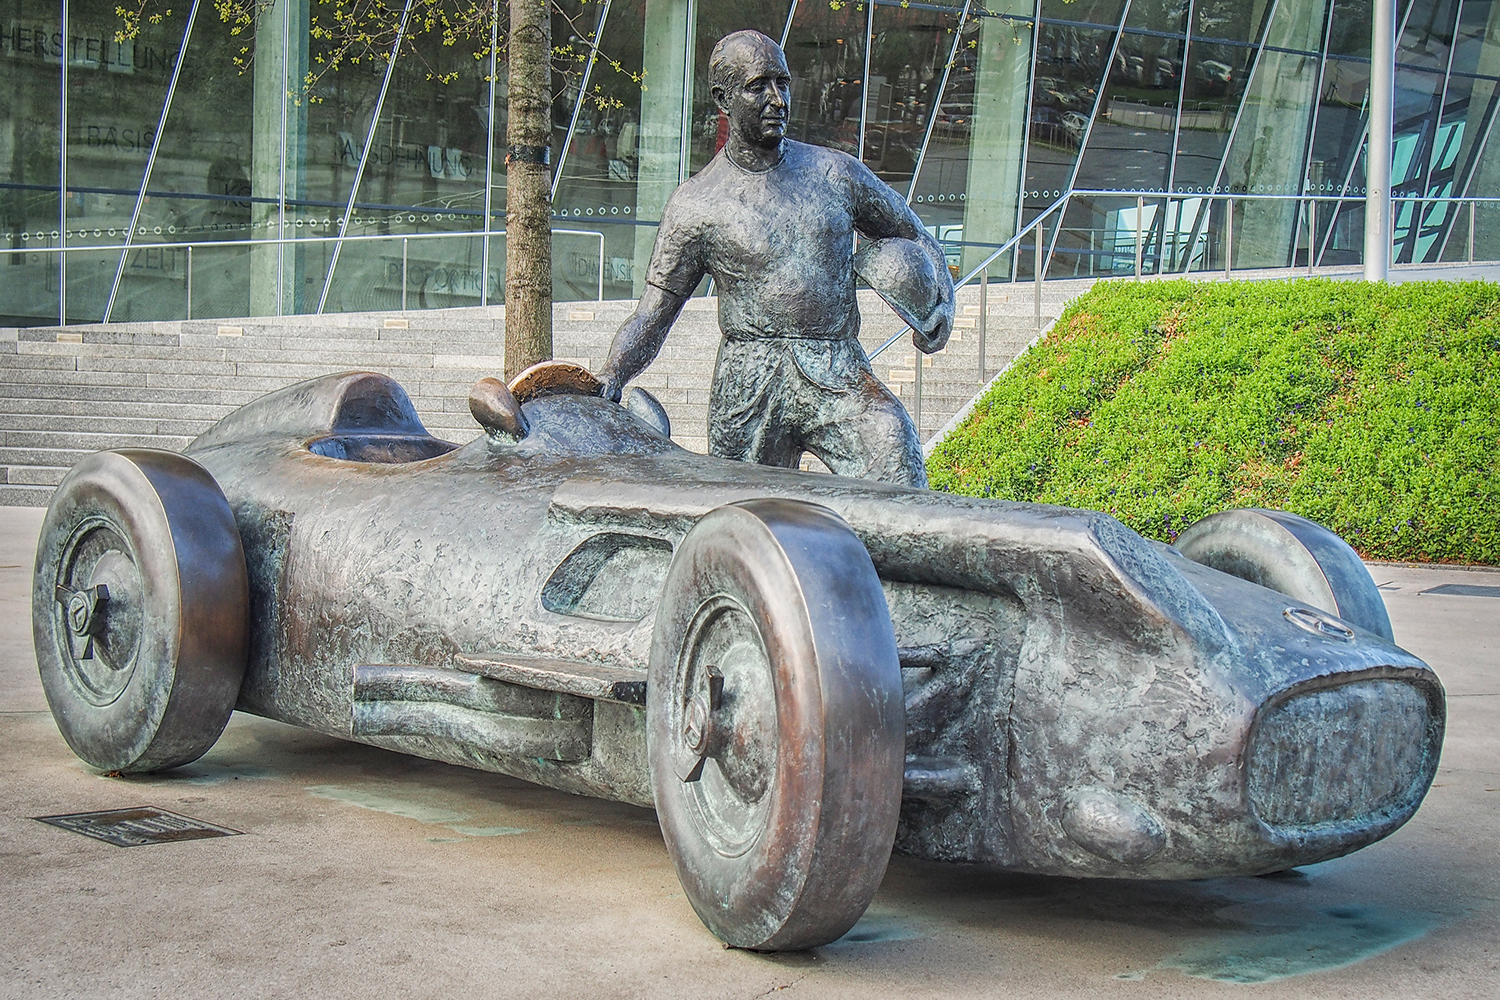 銅像になってもおかしくない日本の自動車産業の向上に偉大な貢献を果たしたクルマ 〜 画像7